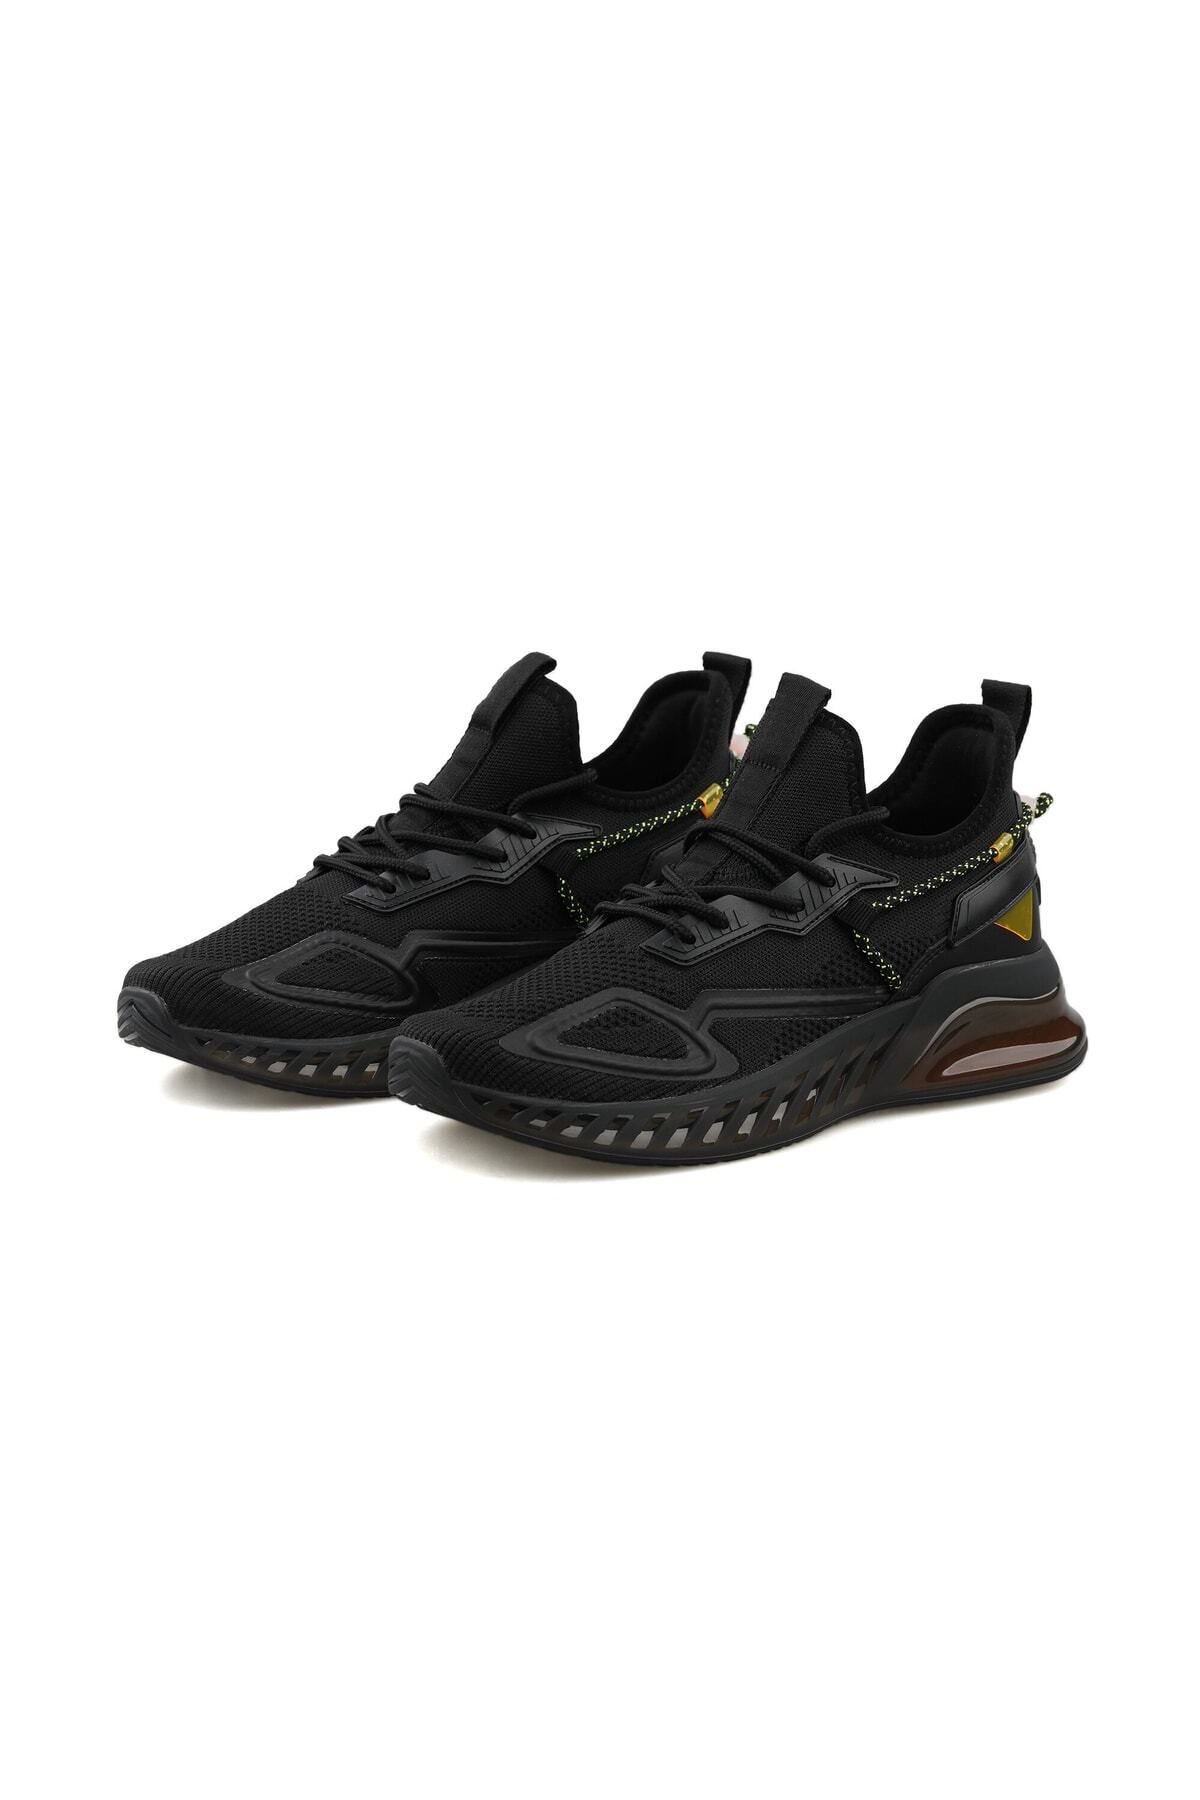 GAMELU Grim Siyah Erkek Air Bosth Yürüyüş Sneaker Spor Ayakkabısı